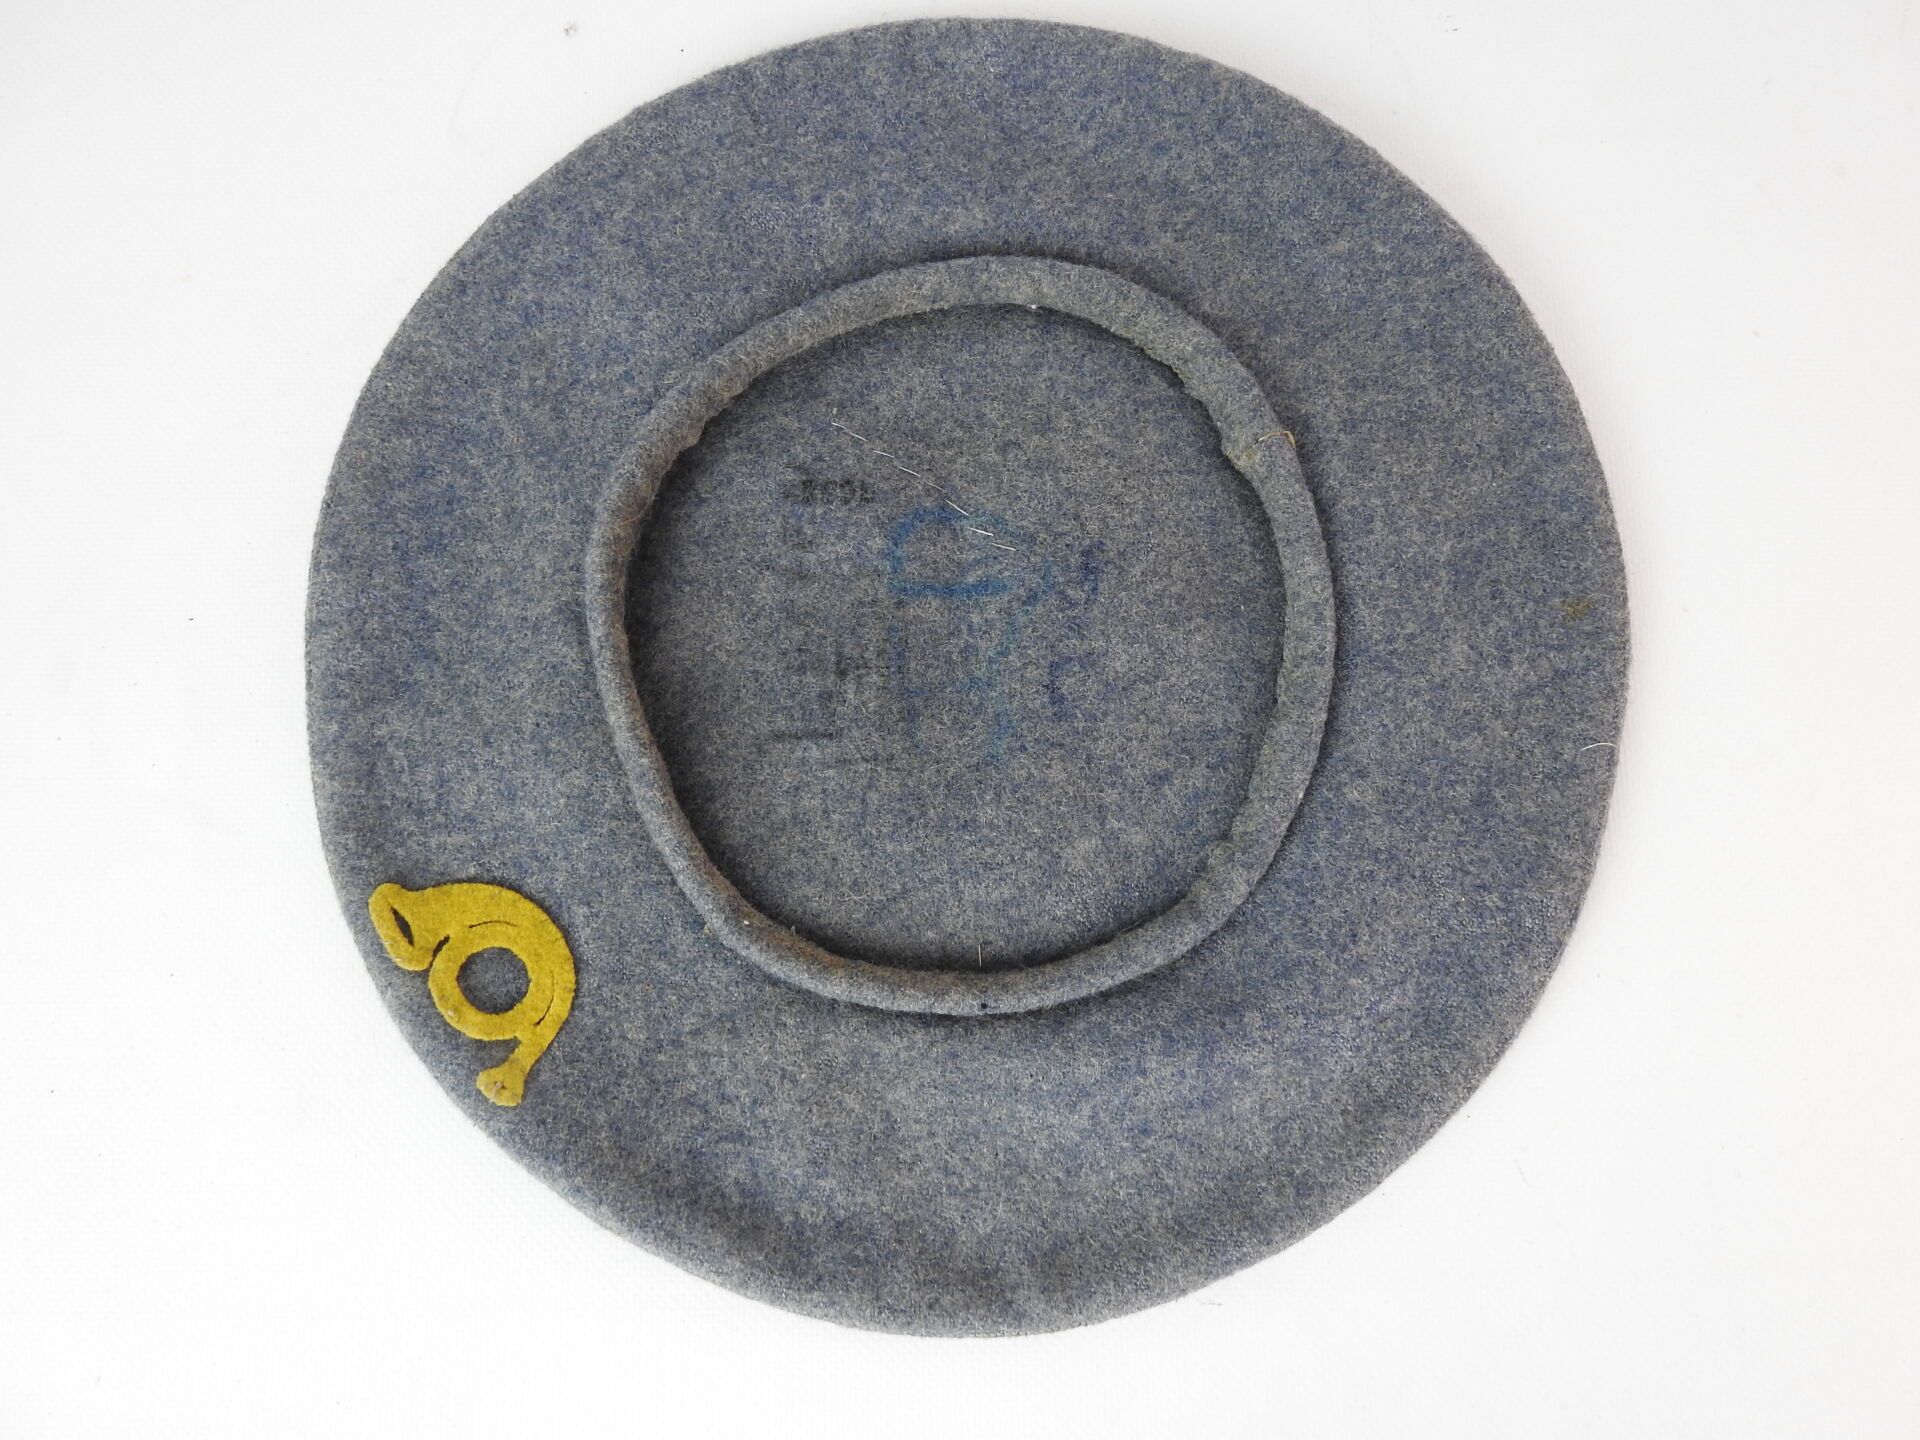 Null 狩猎者。罕见的地平线蓝布贝雷帽，由3个部分缝制而成，装饰有水仙花狩猎角的镂空布。直径：33厘米。是